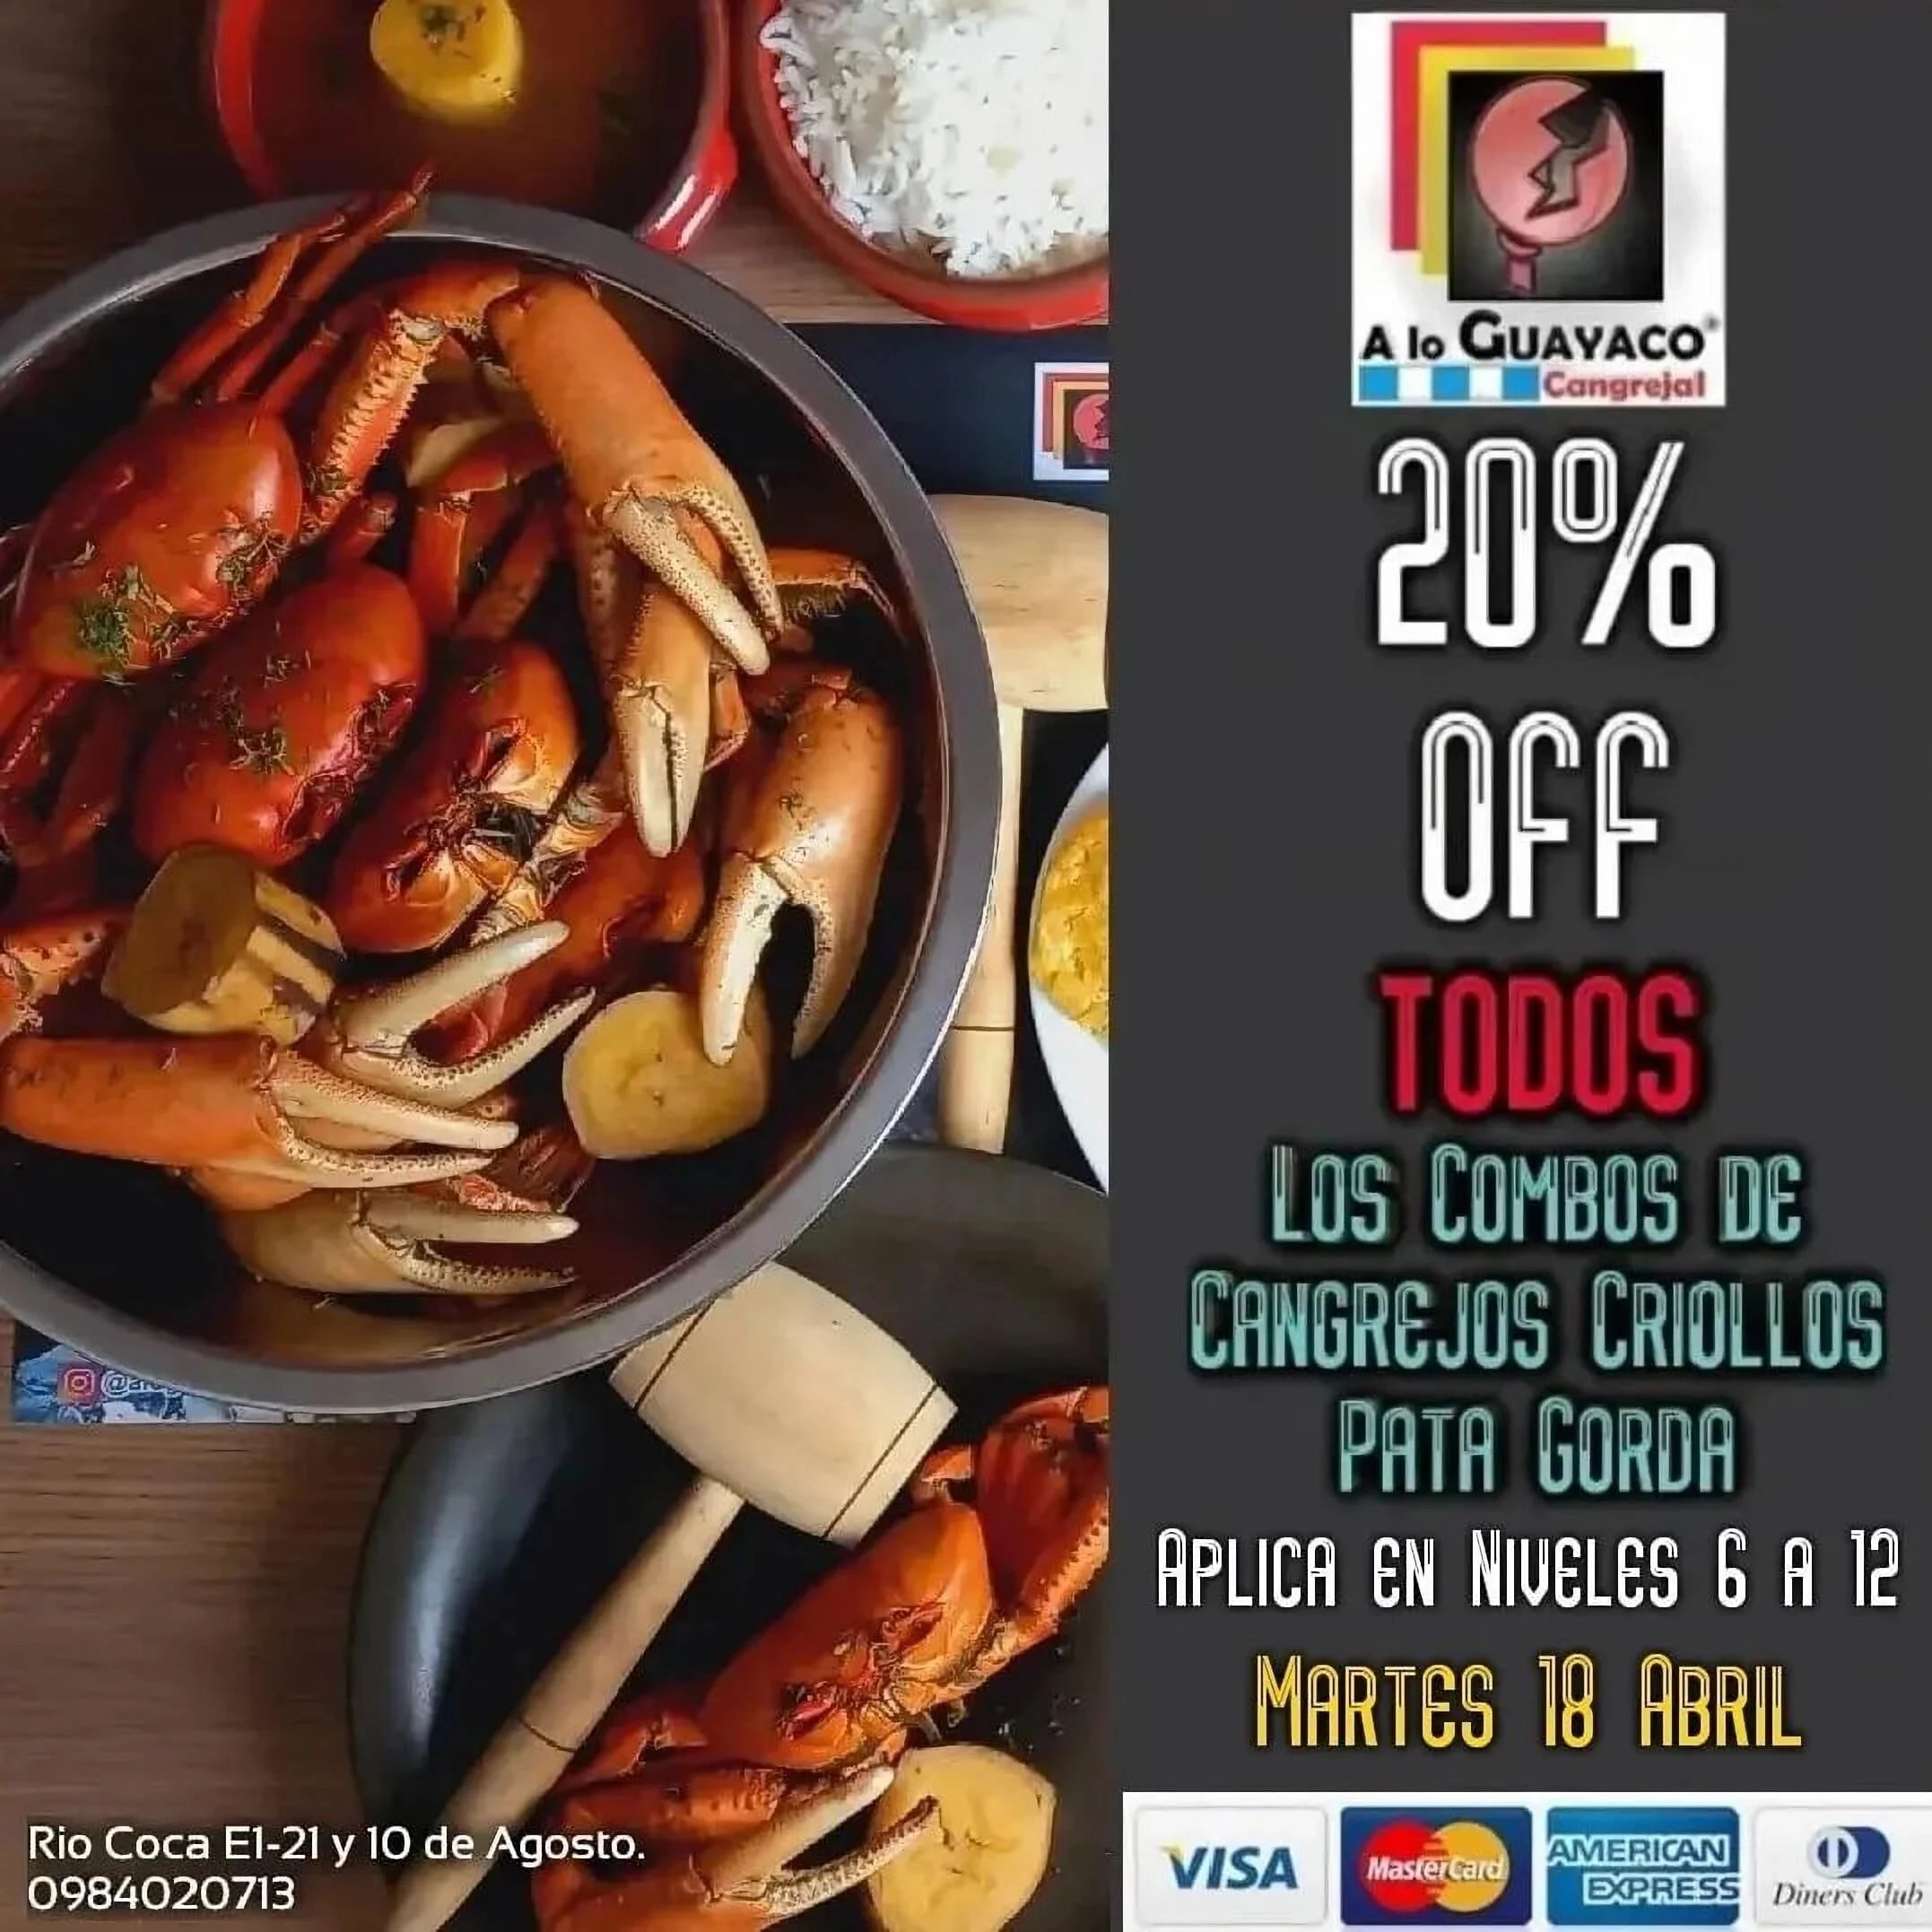 Restaurantes-a-lo-guayaco-cangrejal-quito-restaurante-de-especialidades-de-cangrejo-17770